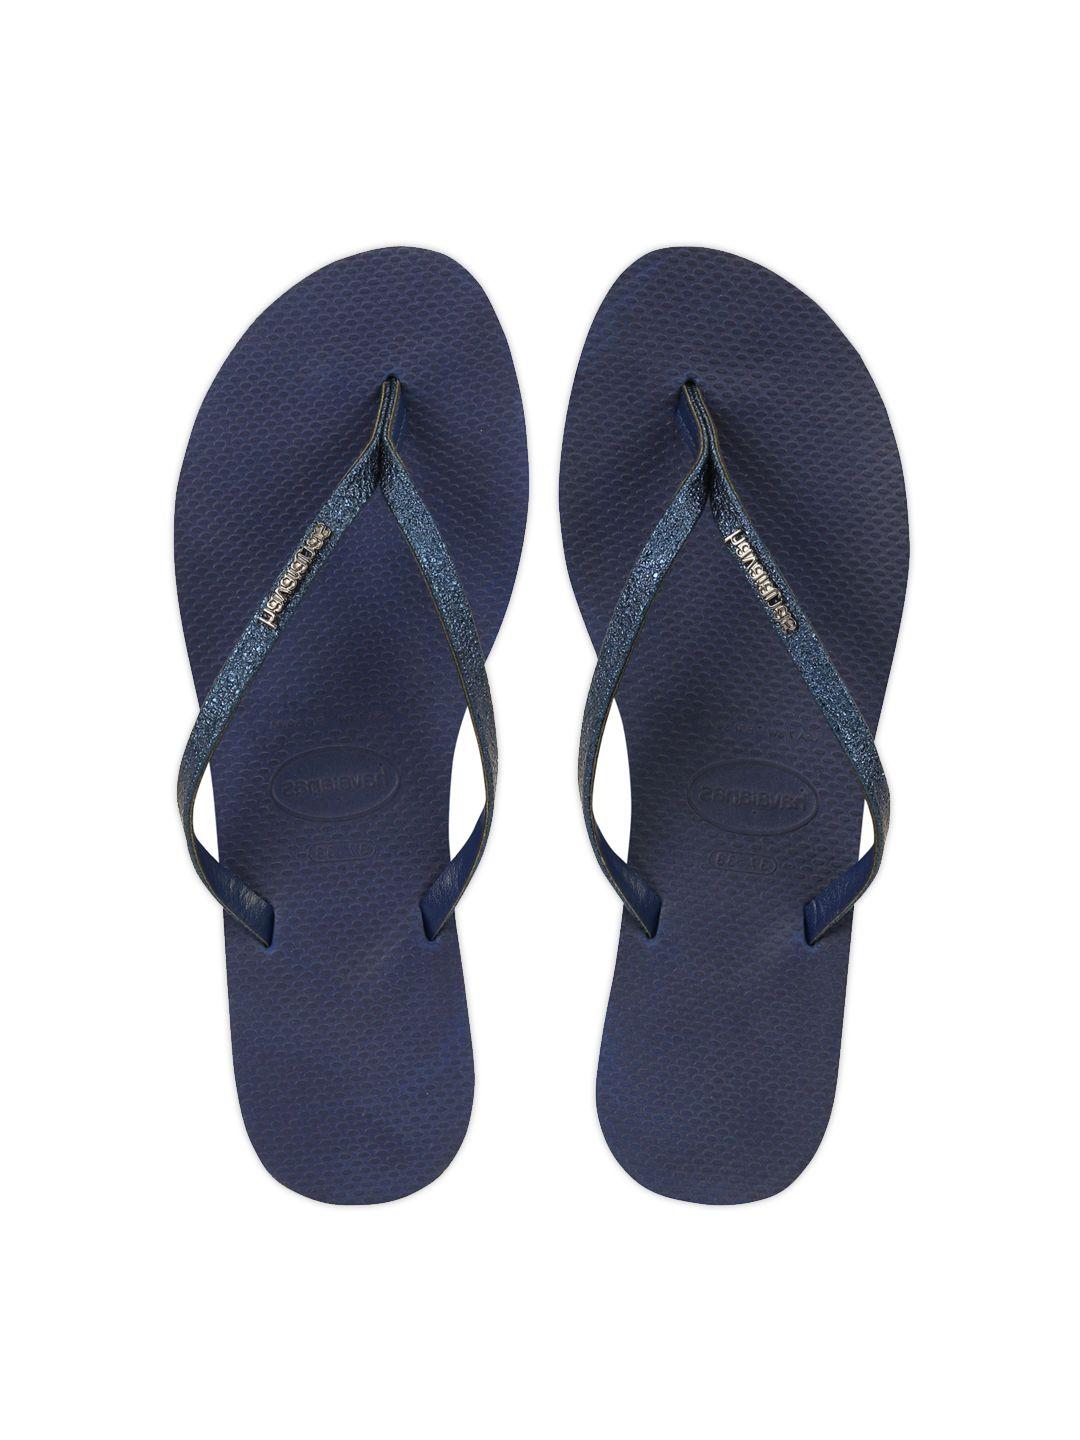 havaianas women navy blue rubber thong flip-flops